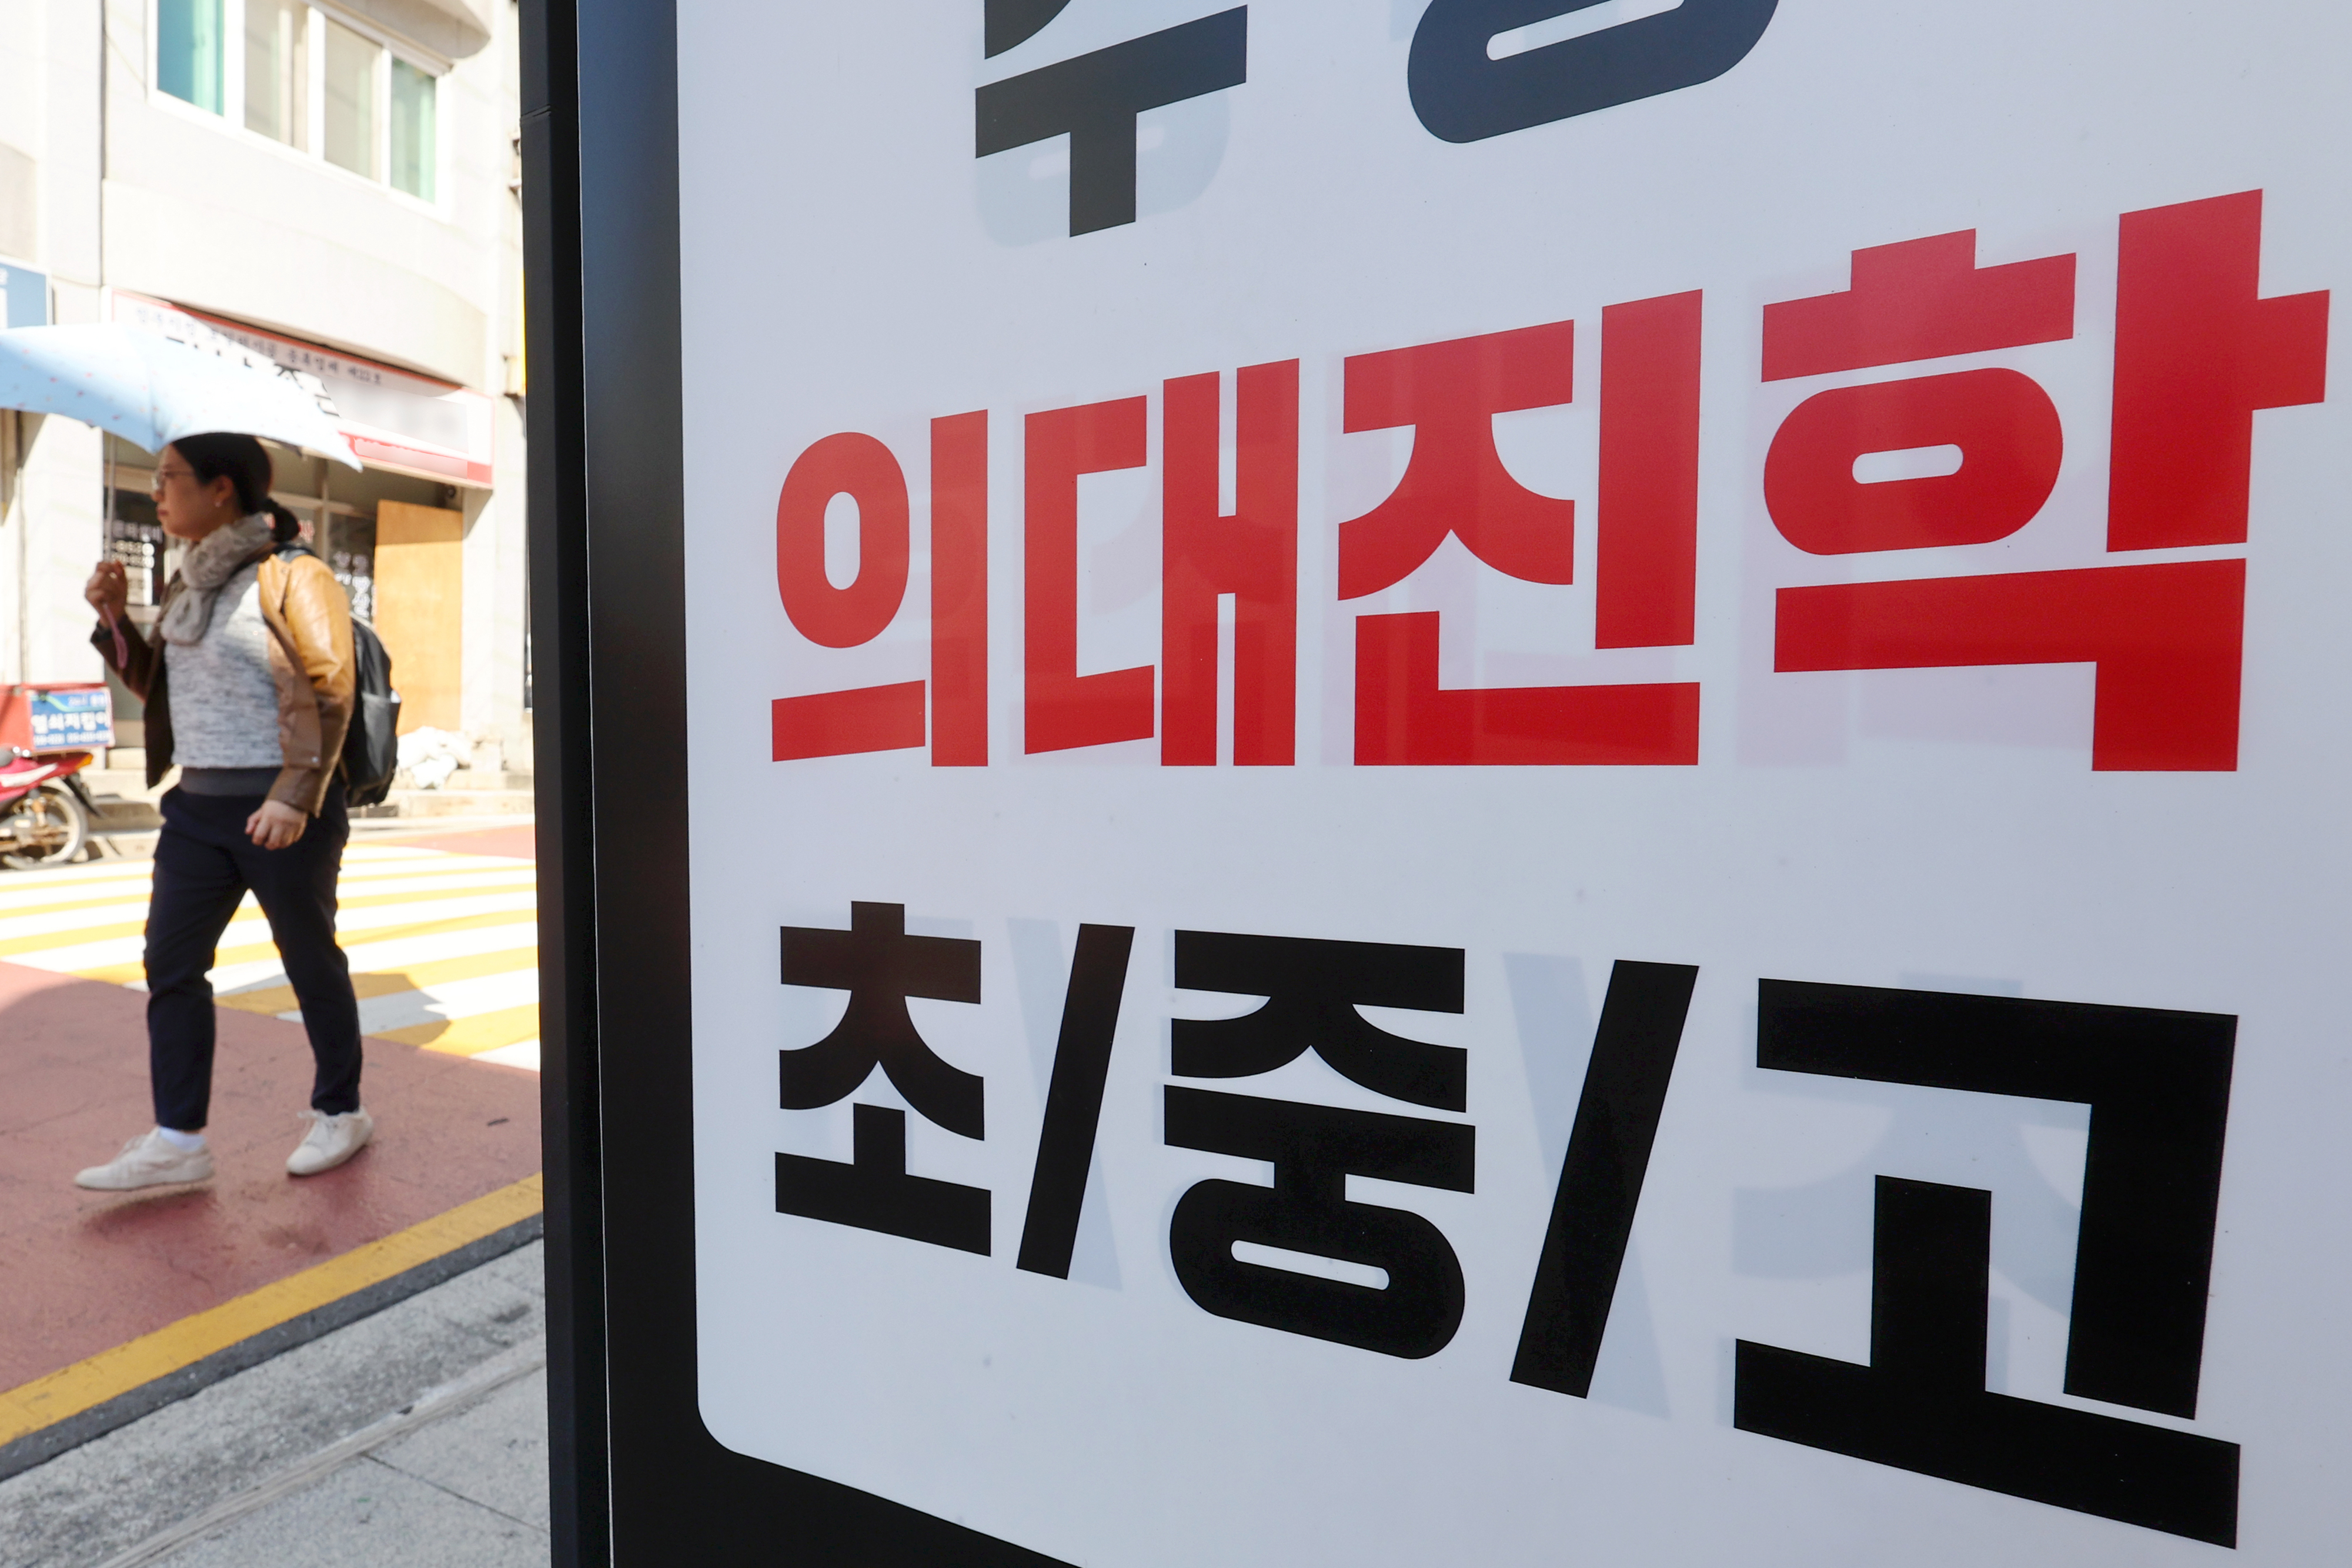 17일 서울 강남구 대치동 학원 앞에 교육 과정과 관련한 광고 문구가 적혀 있다. 연합뉴스